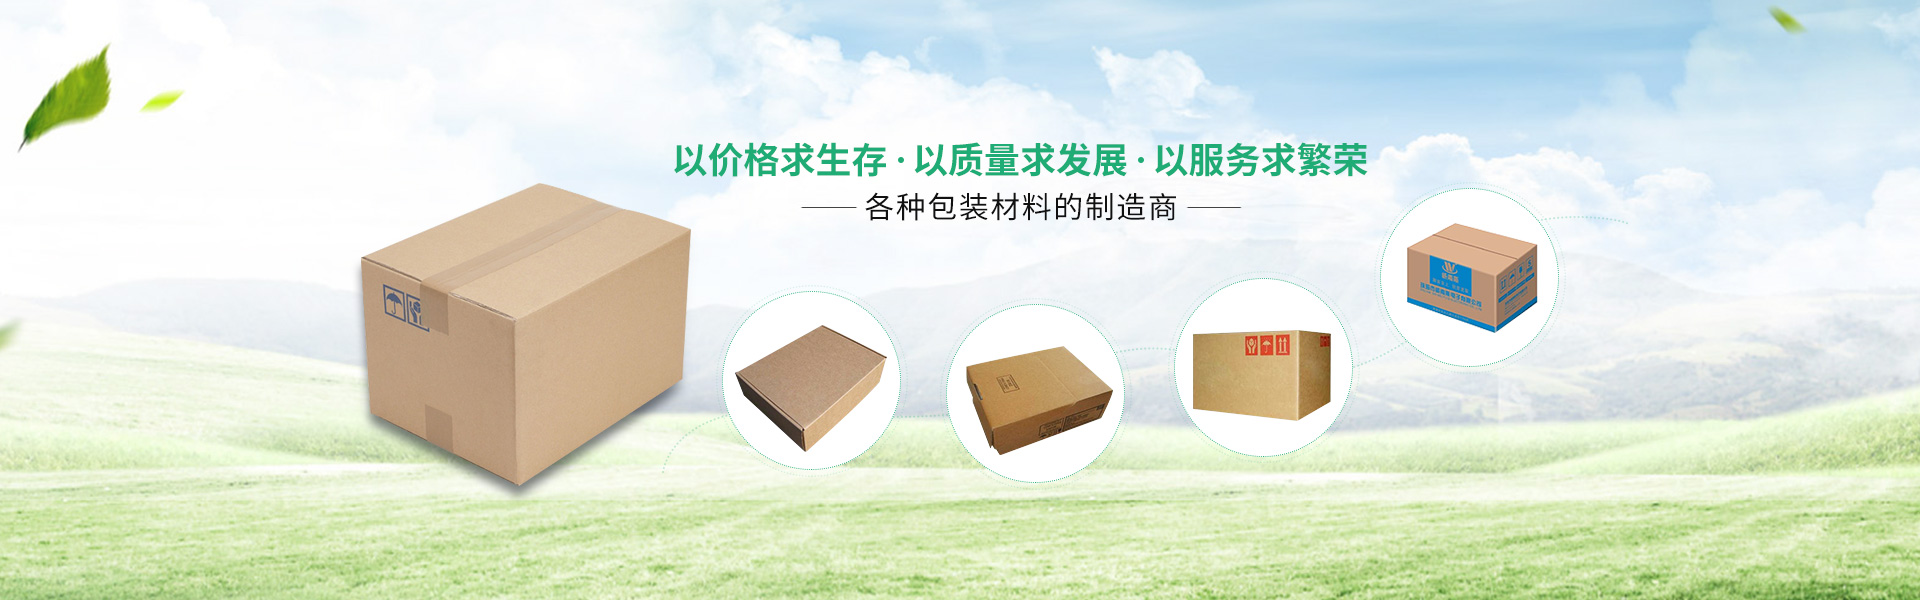 上海紙箱包裝廠家帶您了解包裝設計